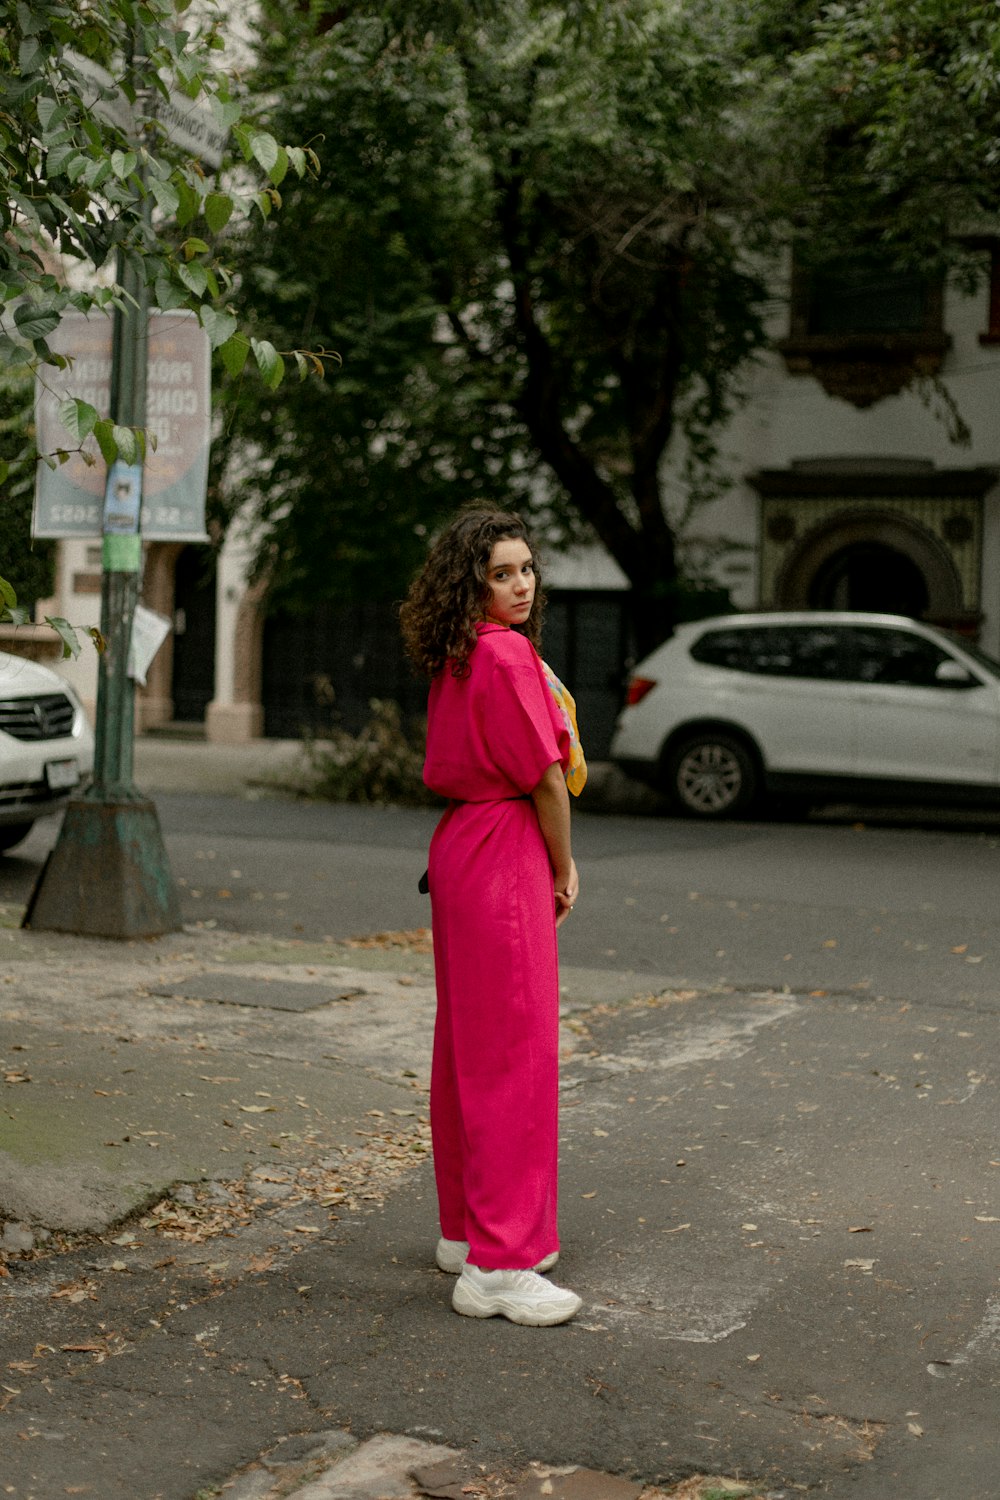 Eine Frau im rosa Kleid steht an einer Straßenecke